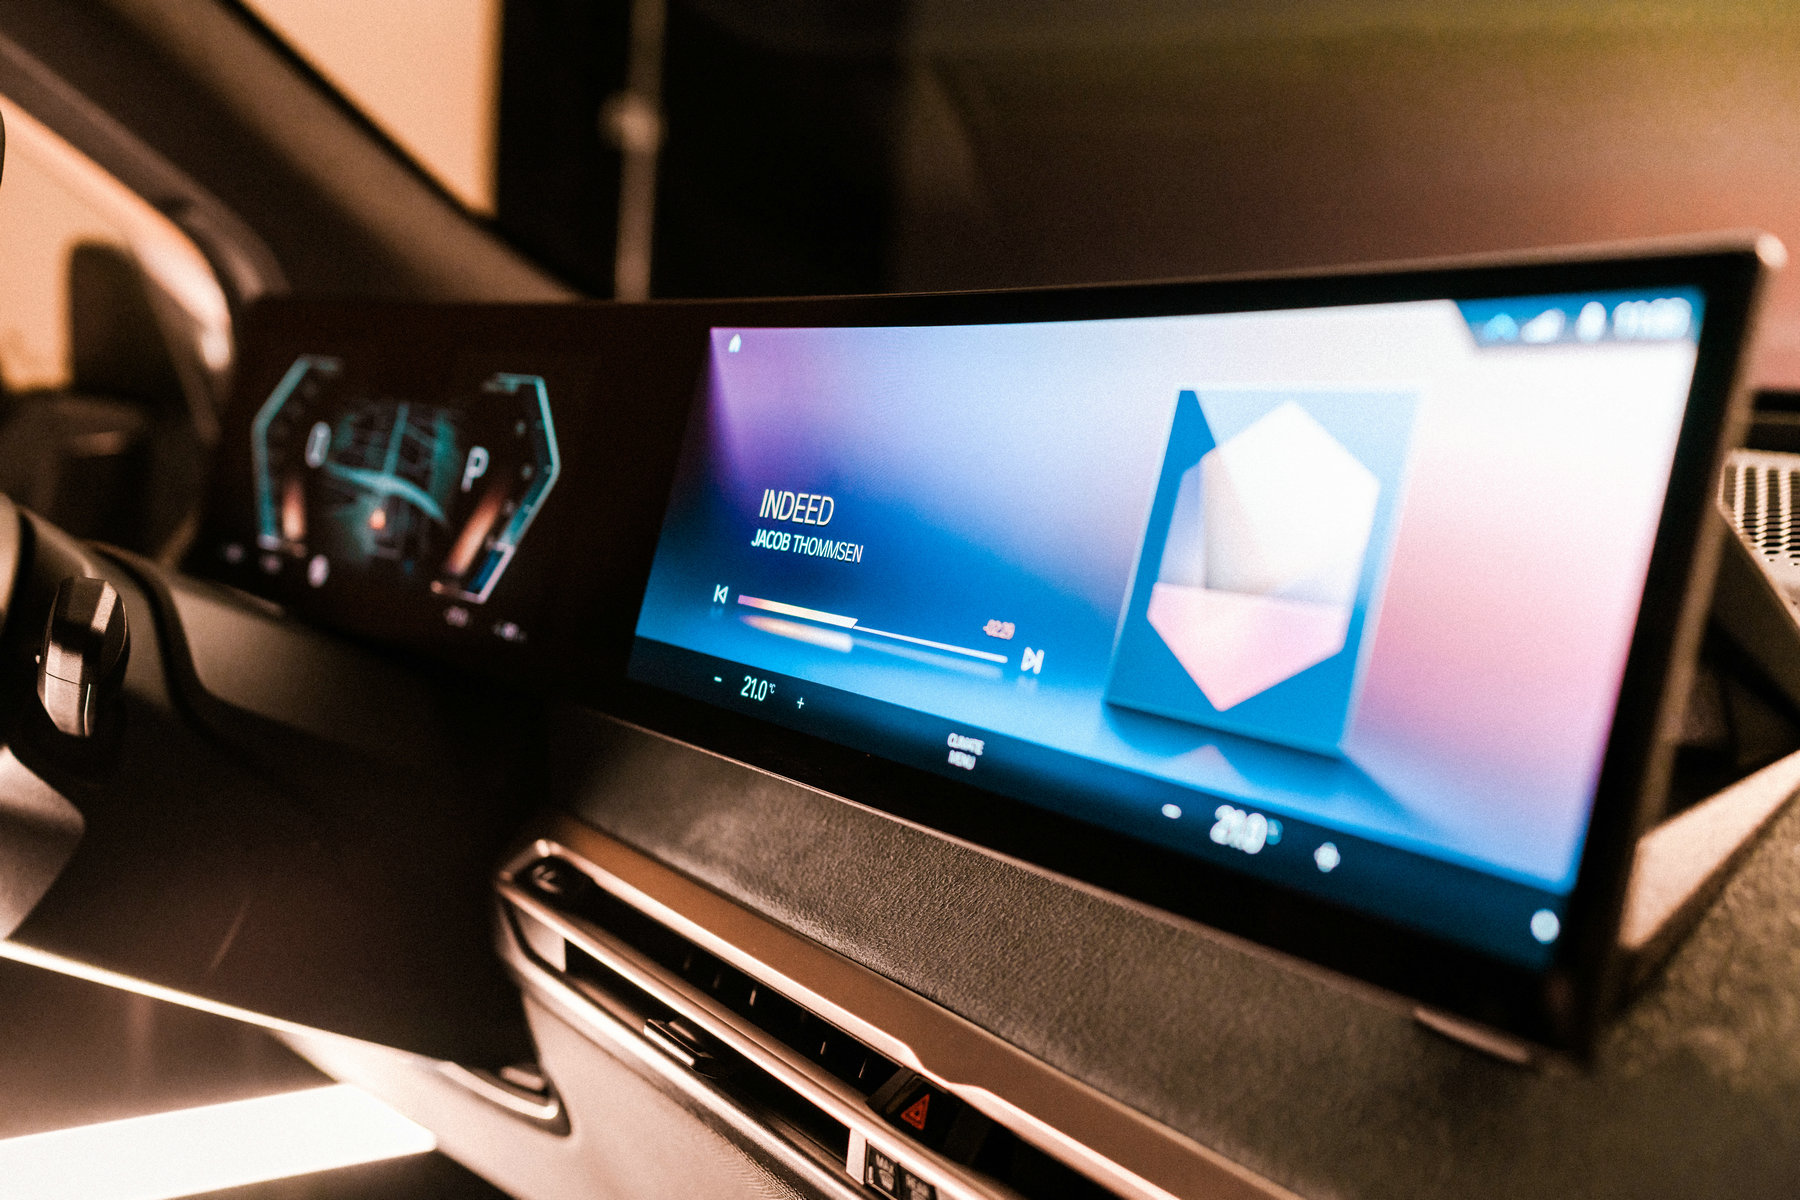 全新BMW iDrive系统亮相2021年北美消费电子展